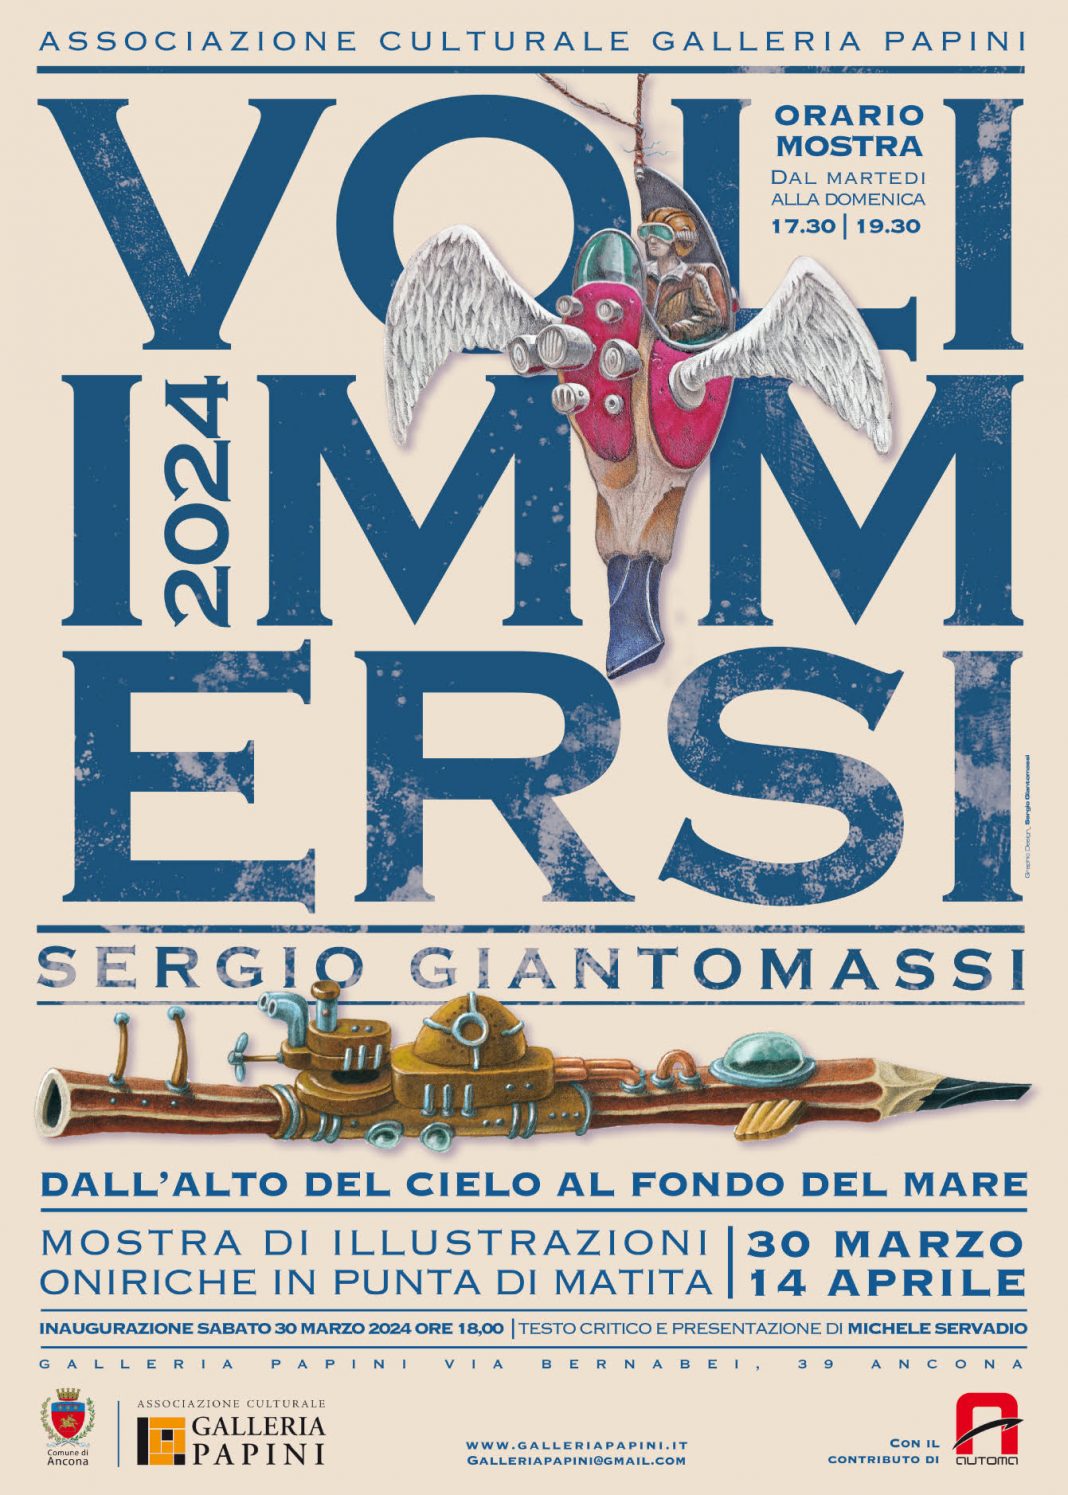 Sergio Giantomassi – Voli immersi Dall’alto del cielo al fondo del marehttps://www.exibart.com/repository/media/formidable/11/img/0f2/manifesto-Giantomassi-definitivo-1068x1495.jpg